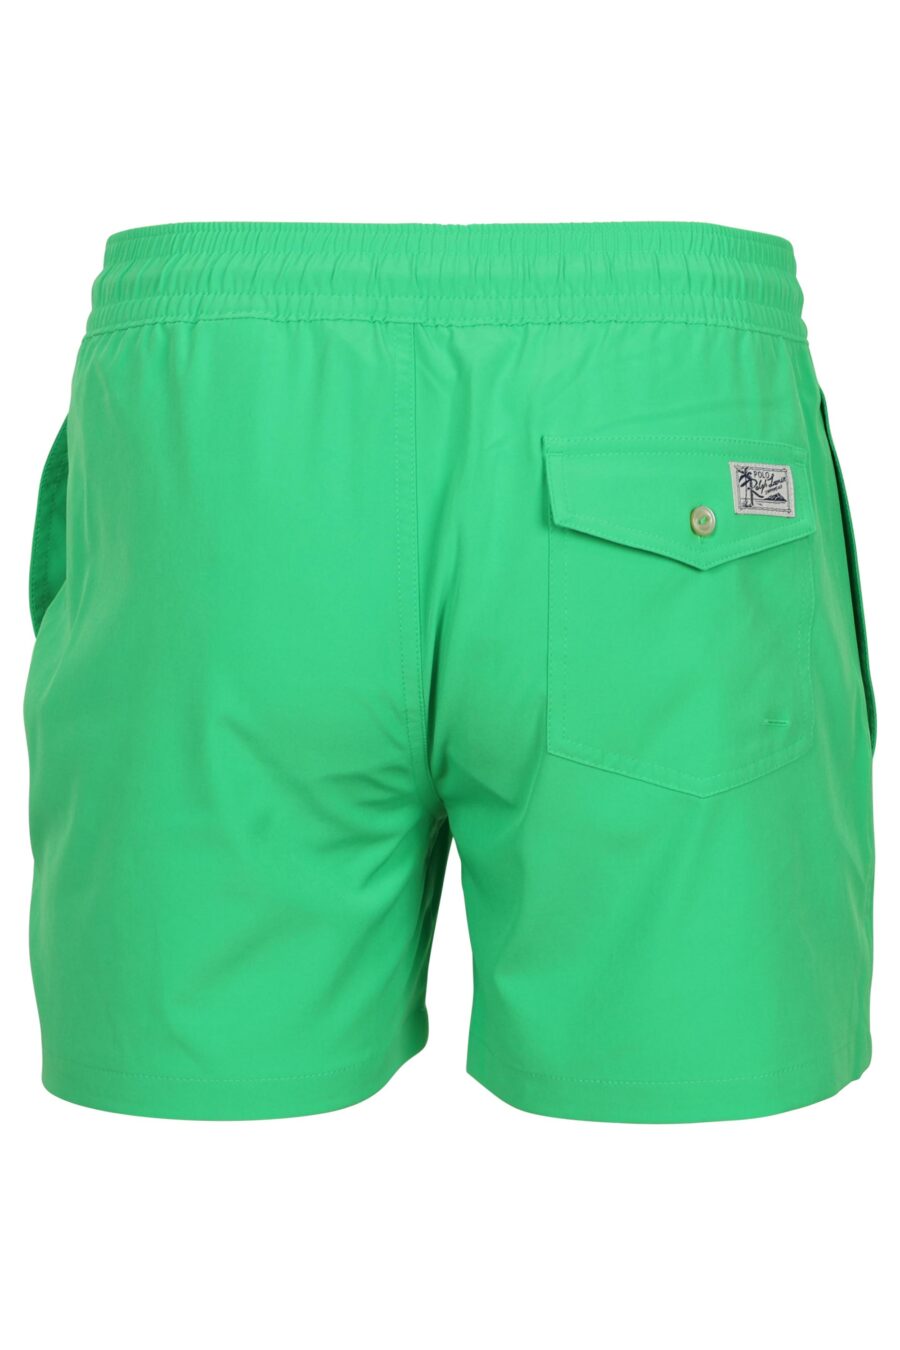 Pantalón corto verde con minilogo "polo" - 3616535968080 1